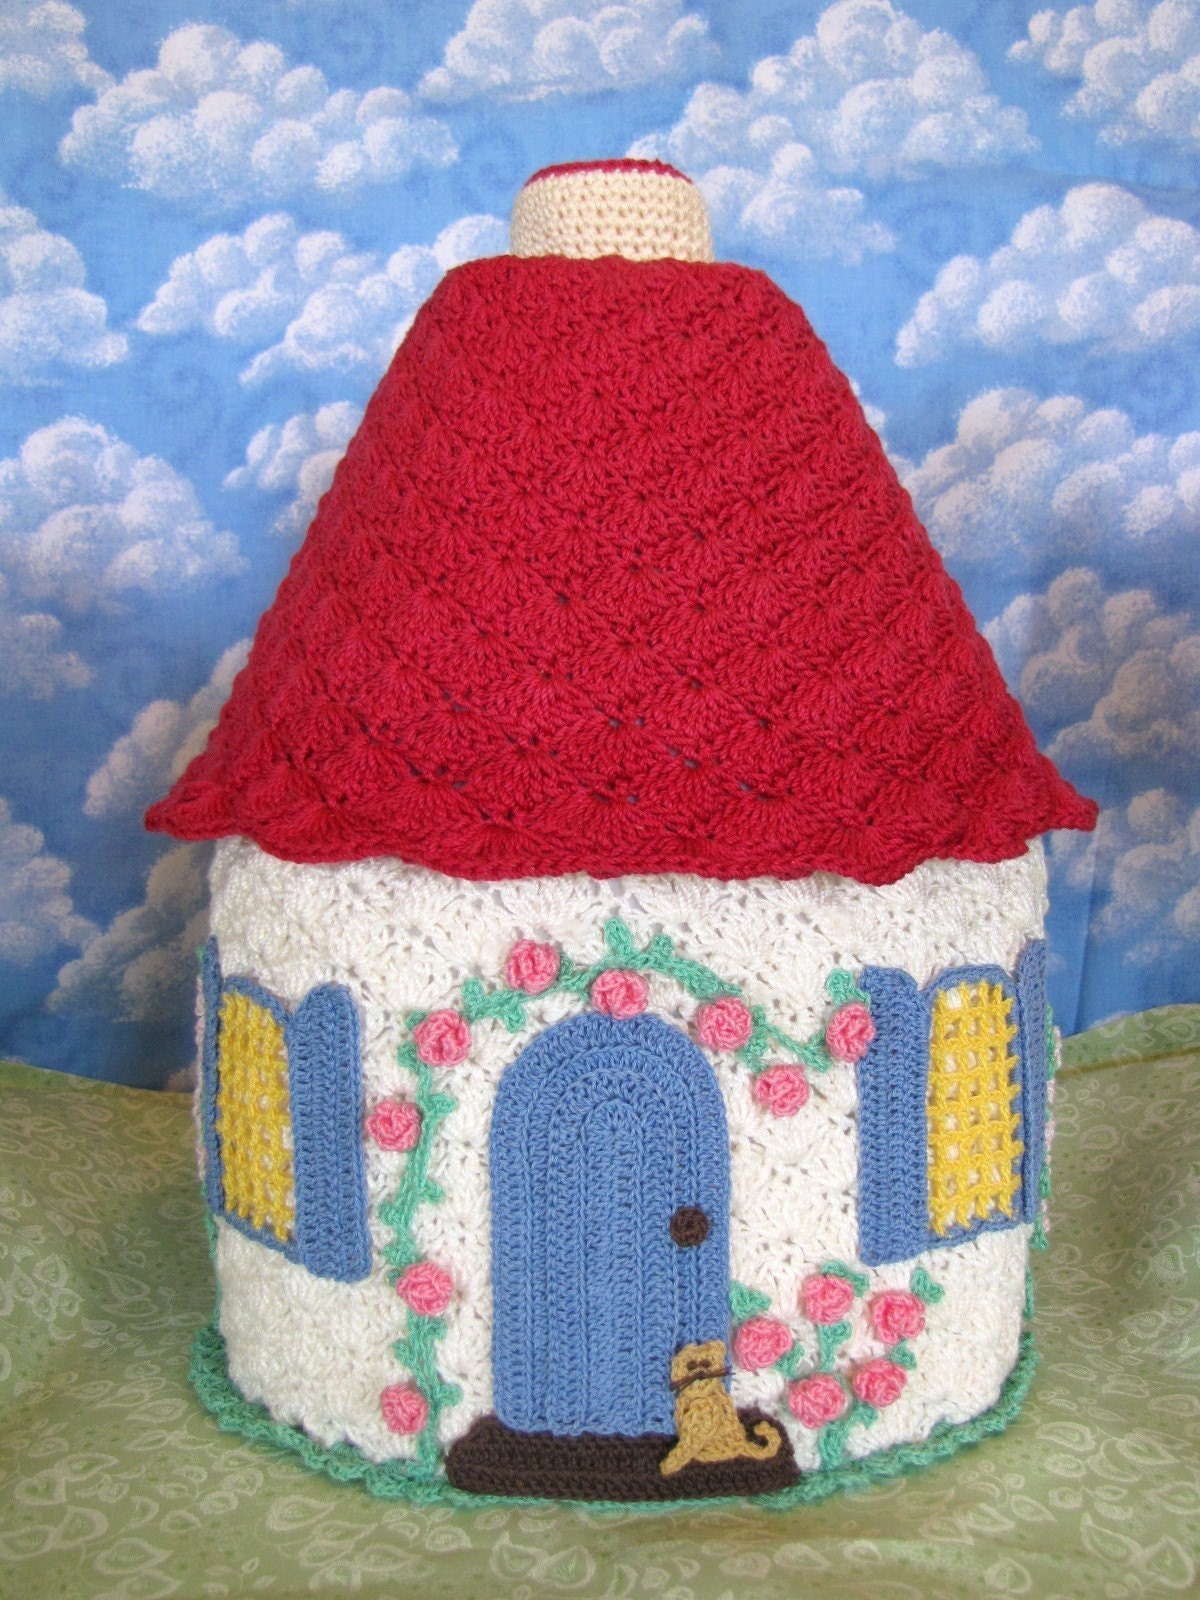 Handmade Crochet Patterns on Etsy - Crochet paterns for amigurumi